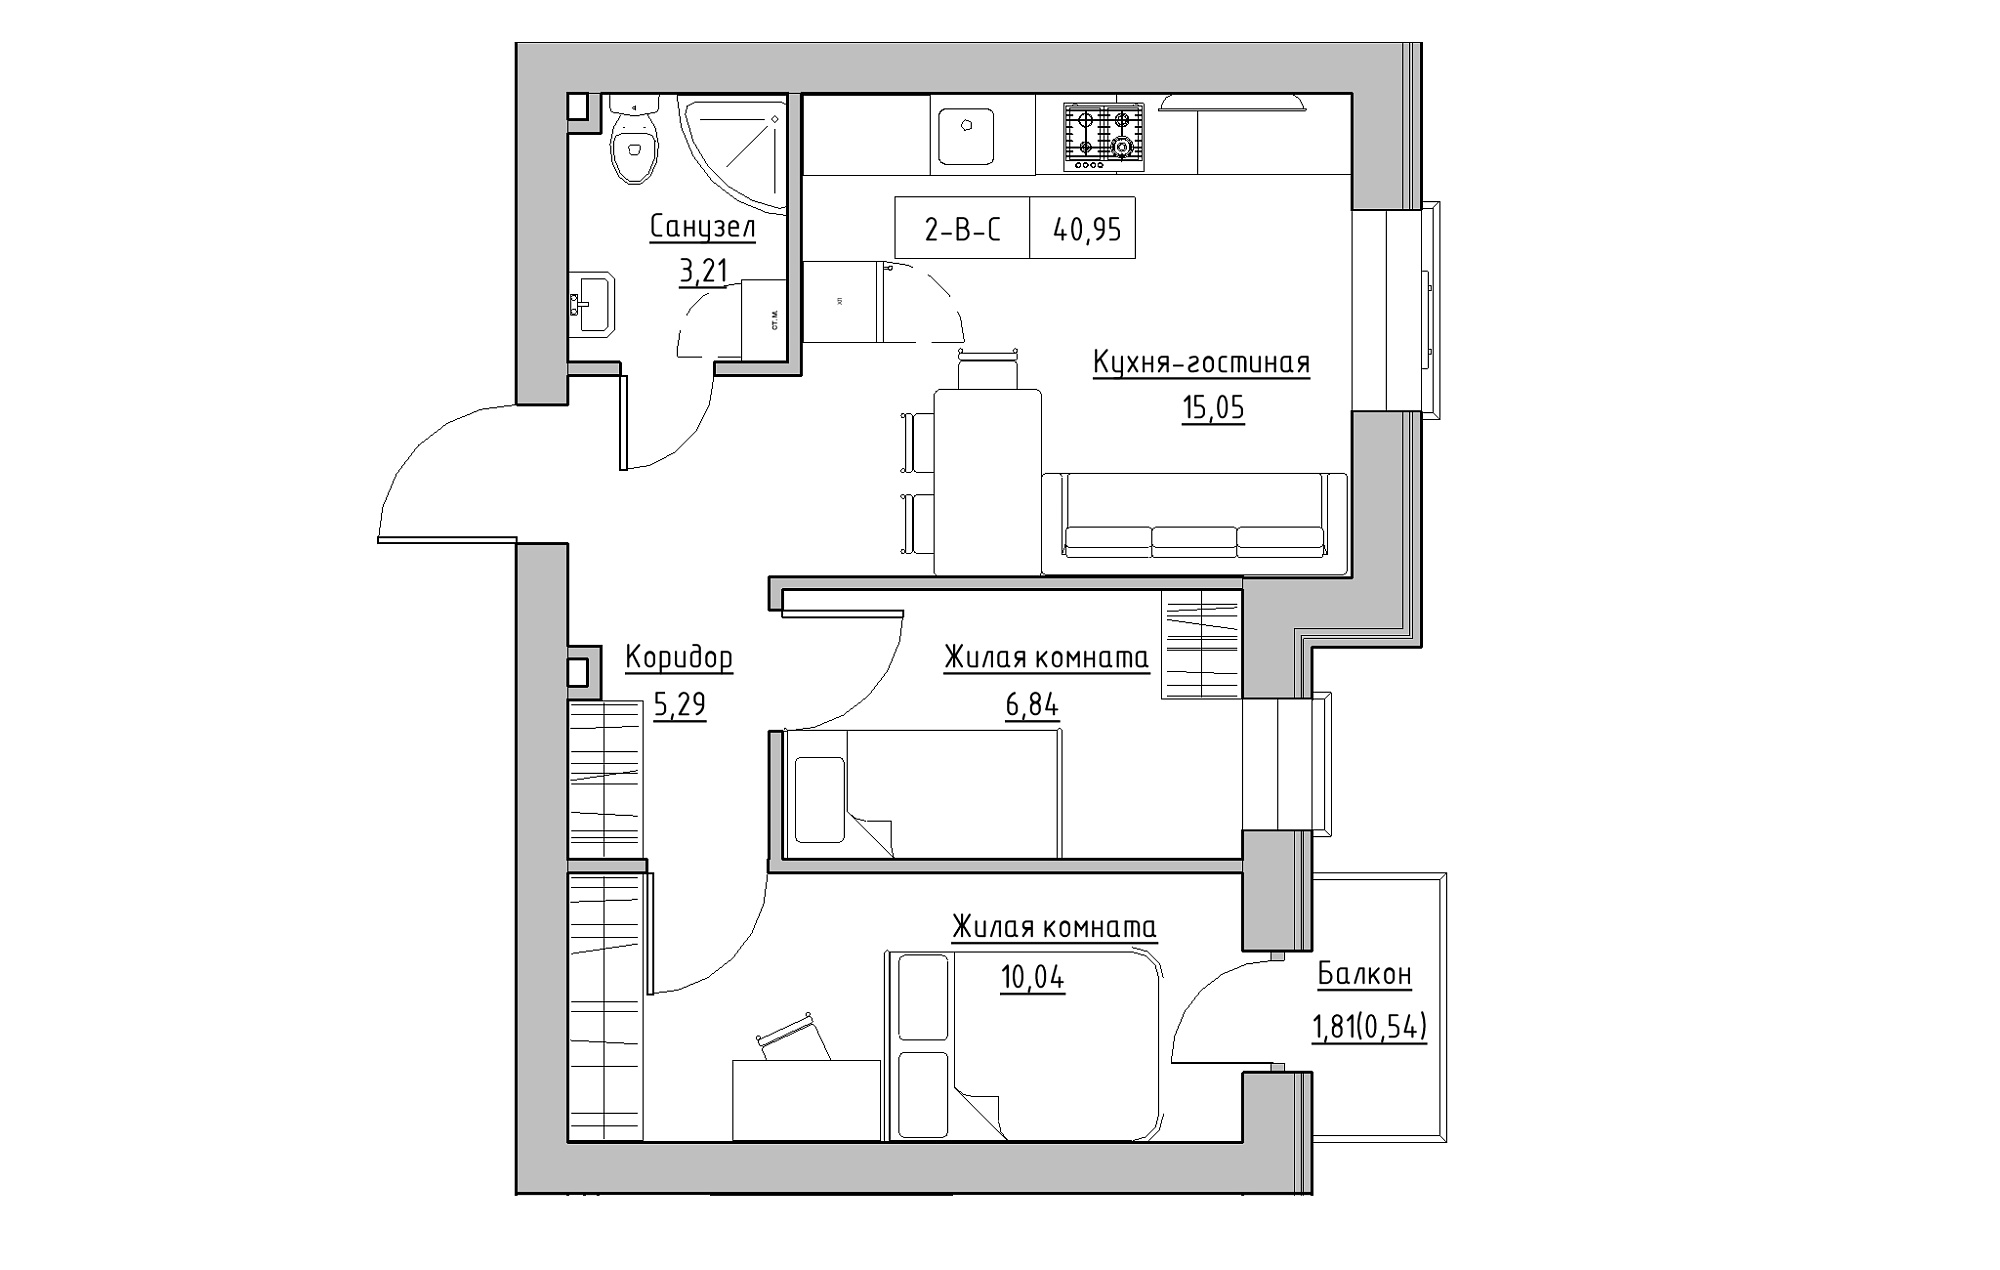 Планування 2-к квартира площею 40.95м2, KS-018-02/0010.